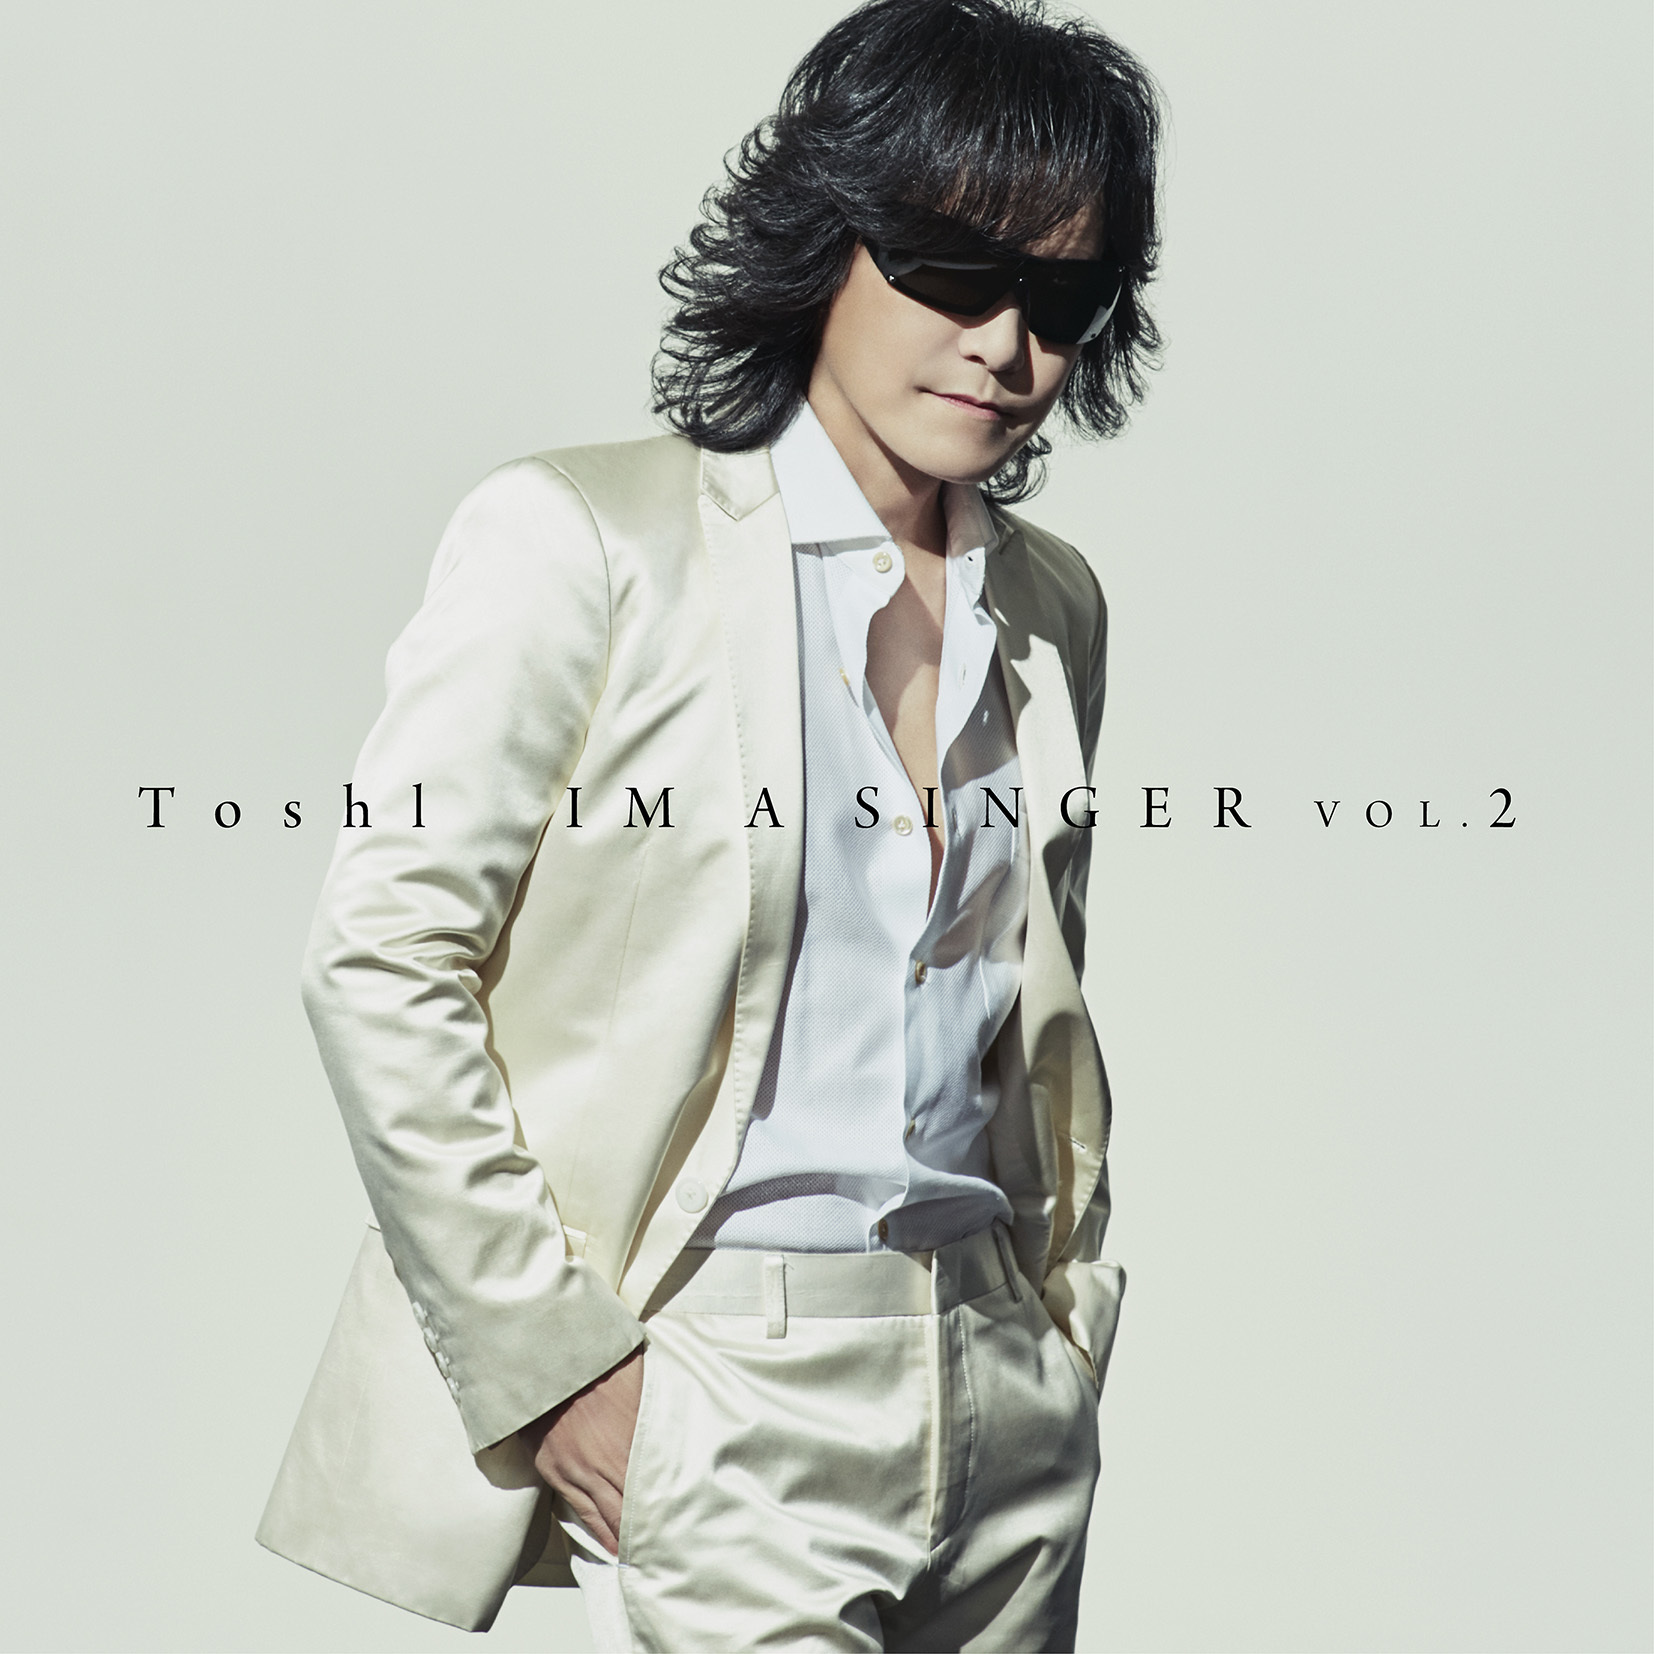 Toshi 大ヒット カバーアルバムの第二弾 Im A Singer Vol 2 の発売が決定 Spice エンタメ特化型情報メディア スパイス